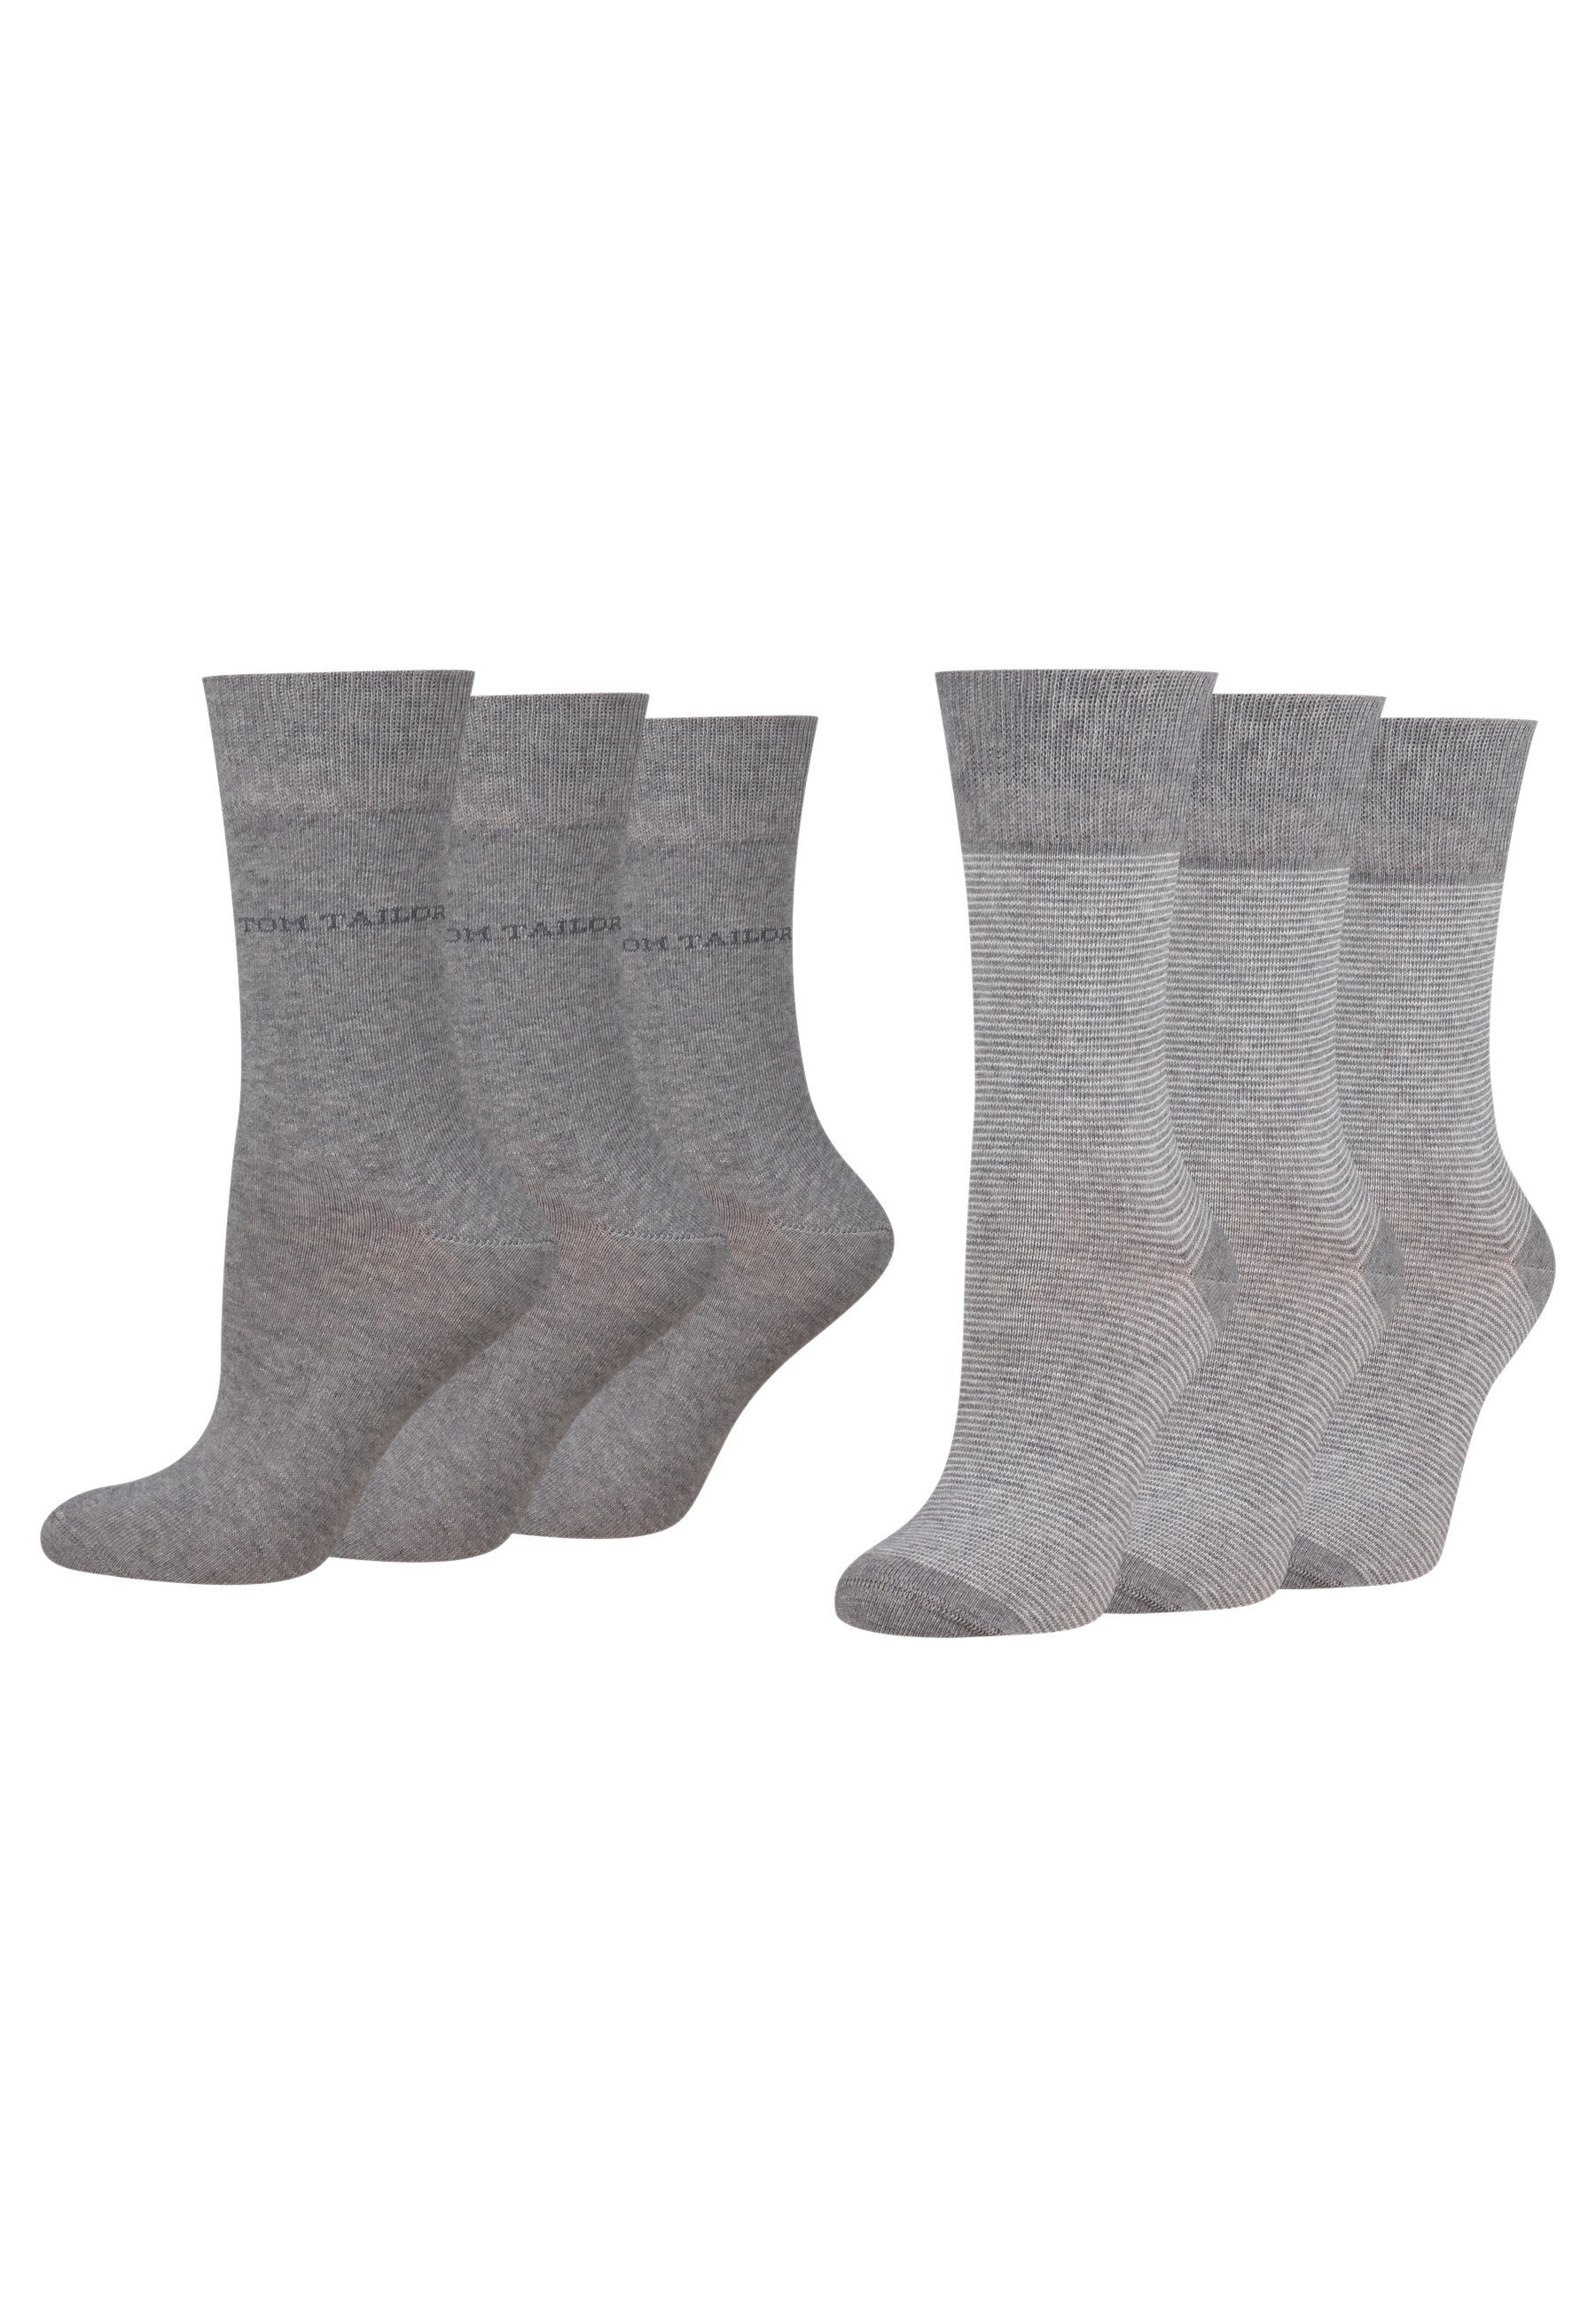 TOM TAILOR Socken 9521150038_6 Tom Tailor women socks 2er basic stripe 6 Paar grey